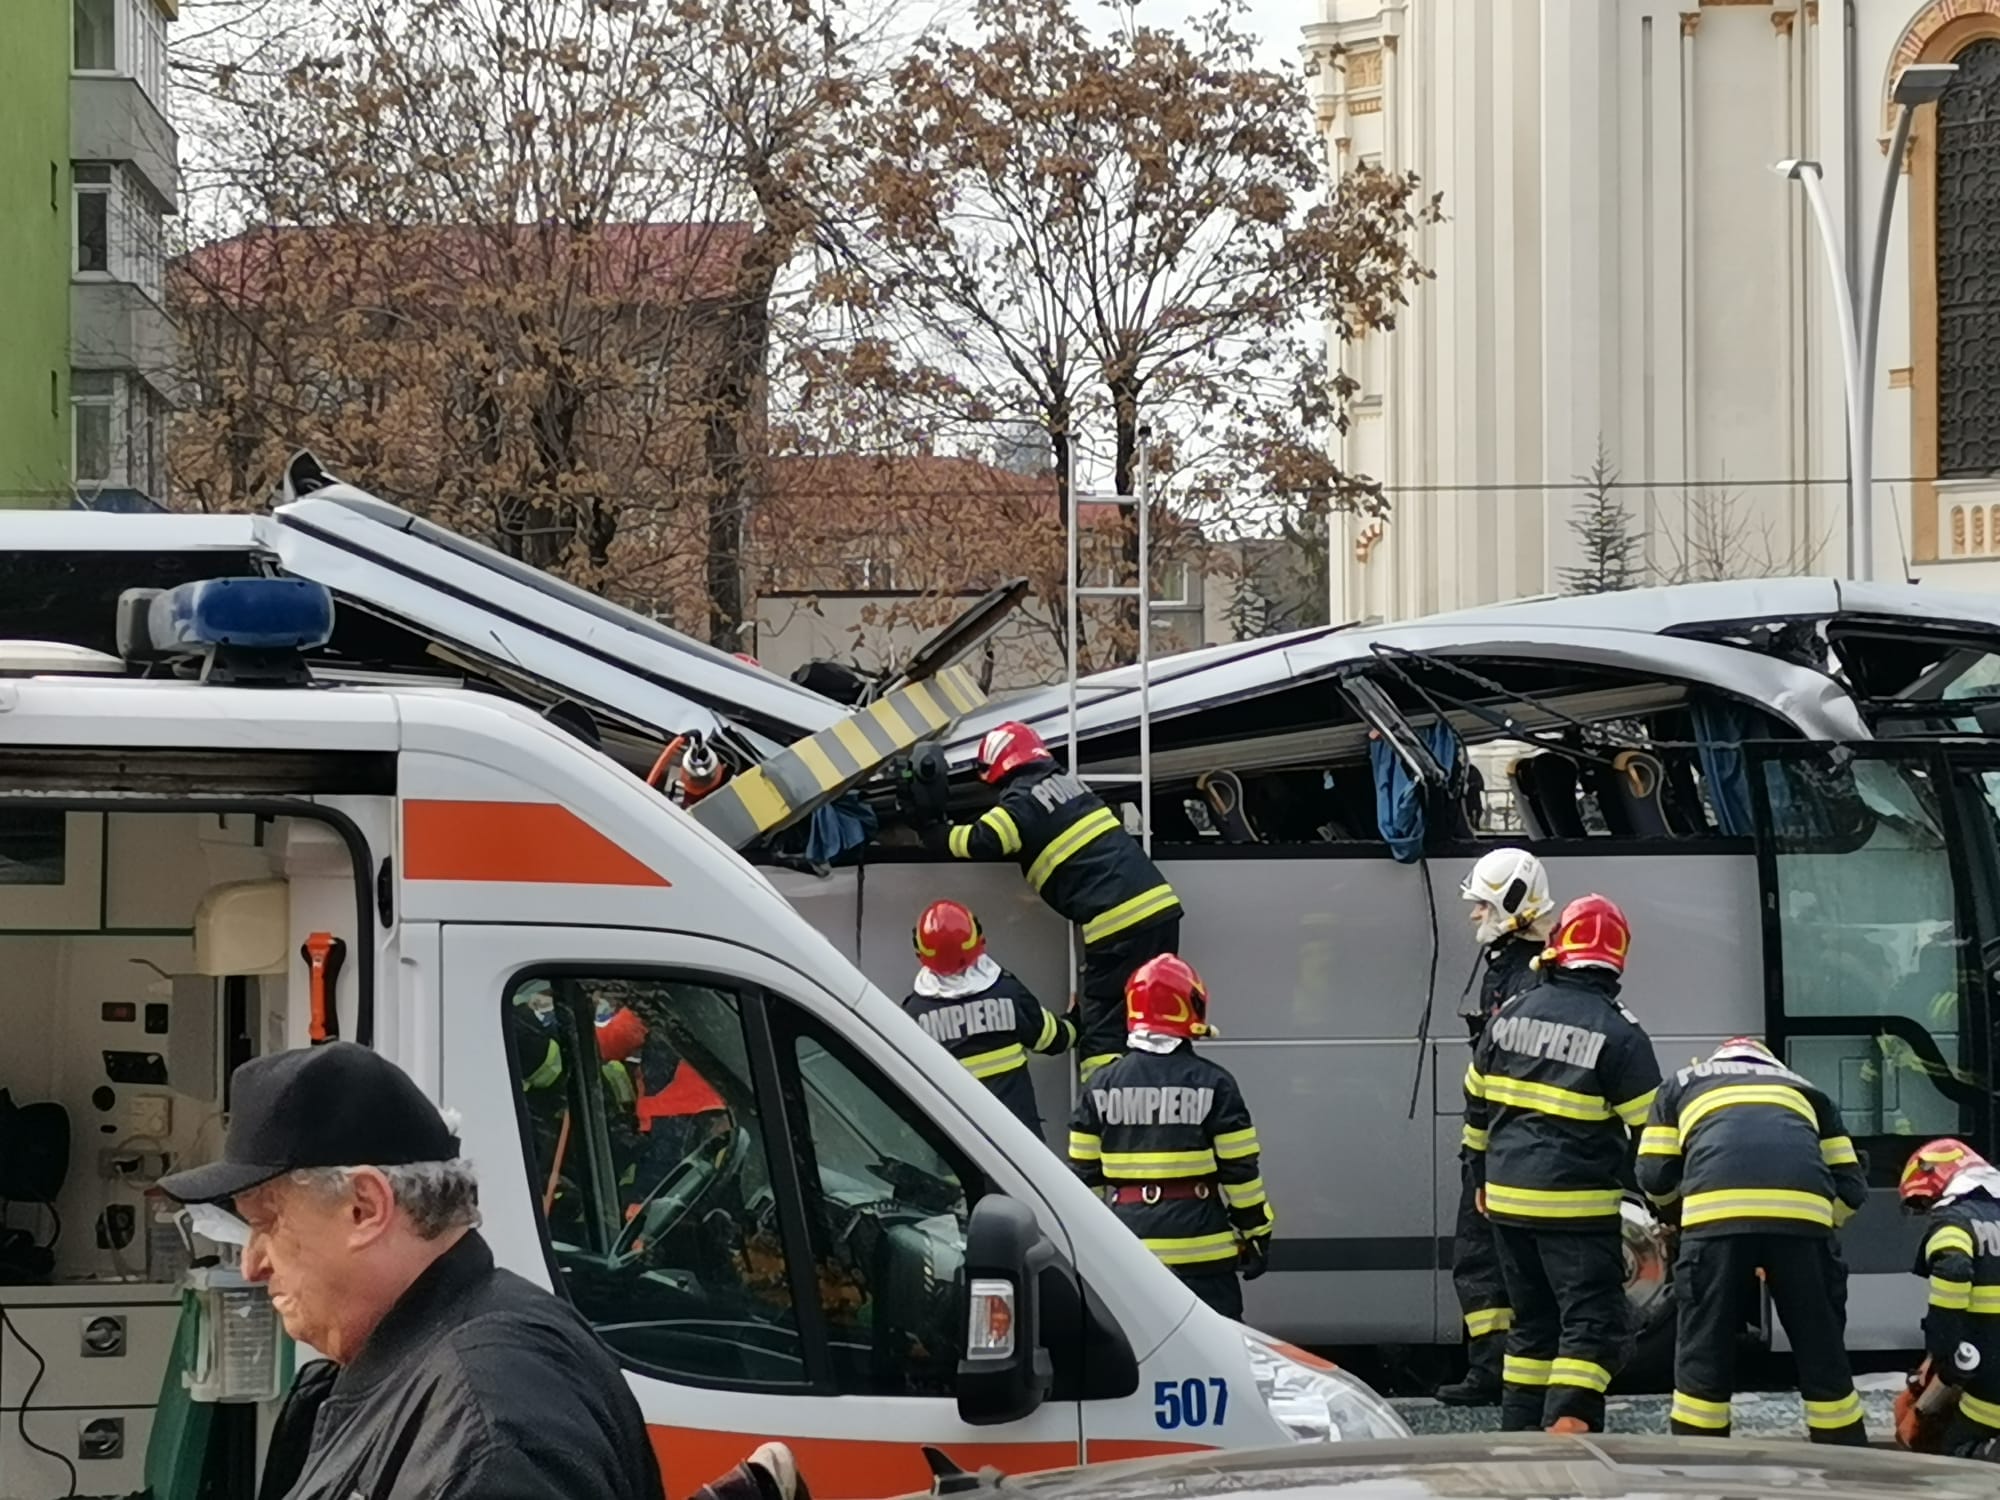 Βουκουρέστι: Τροχαίο με λεωφορείο, 47 Έλληνες επιβαίνοντες – Ένας νεκρός & 22 τραυματίες (βίντεο και φωτογραφίες)